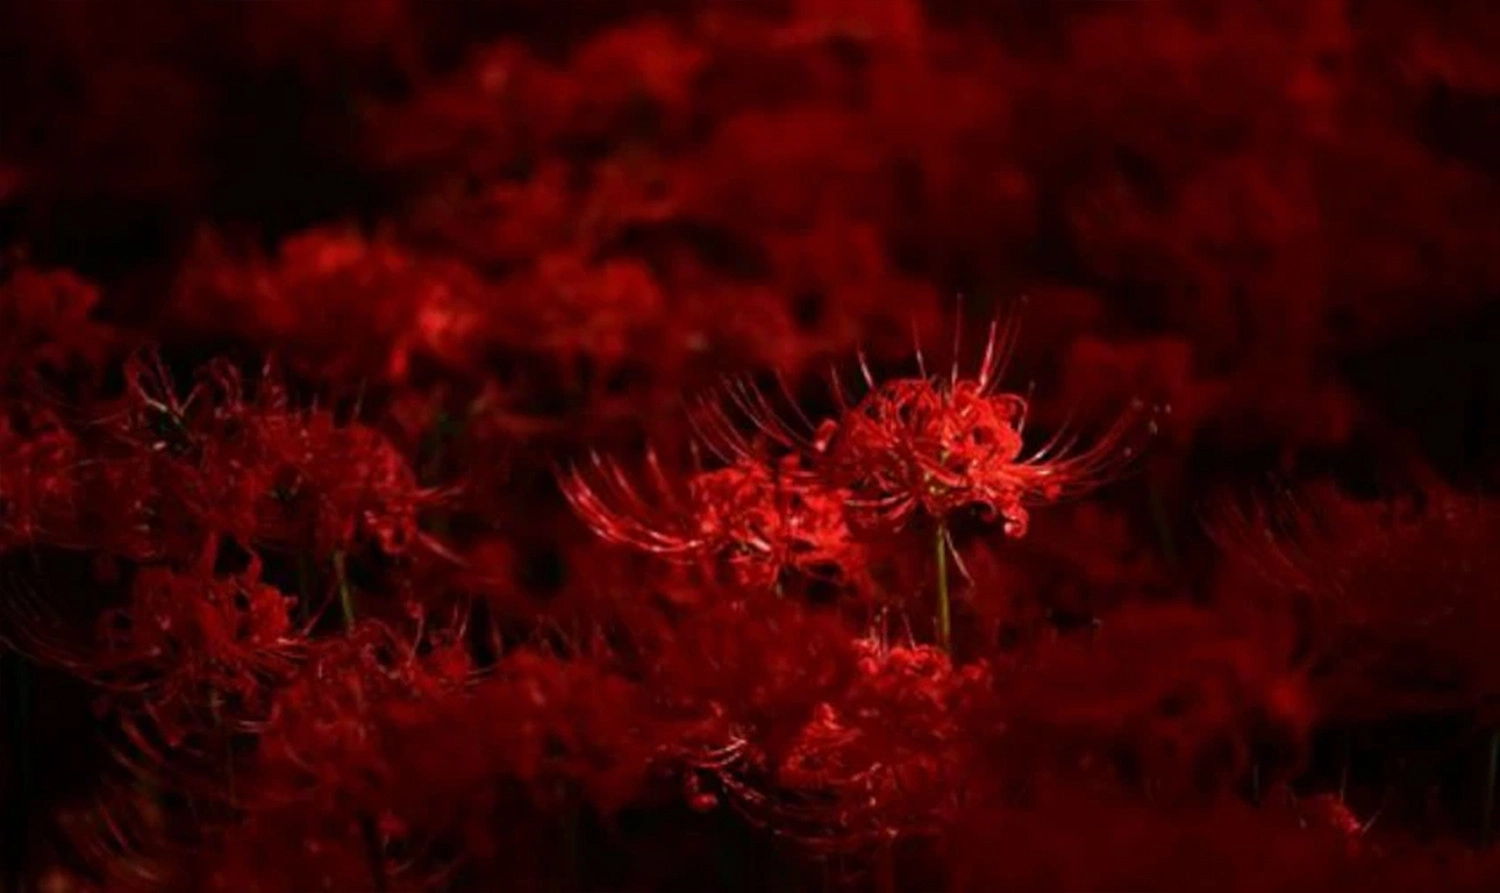  Ảnh nền rừng hoa bỉ ngạn đỏ siêu nét 4K cho máy tính